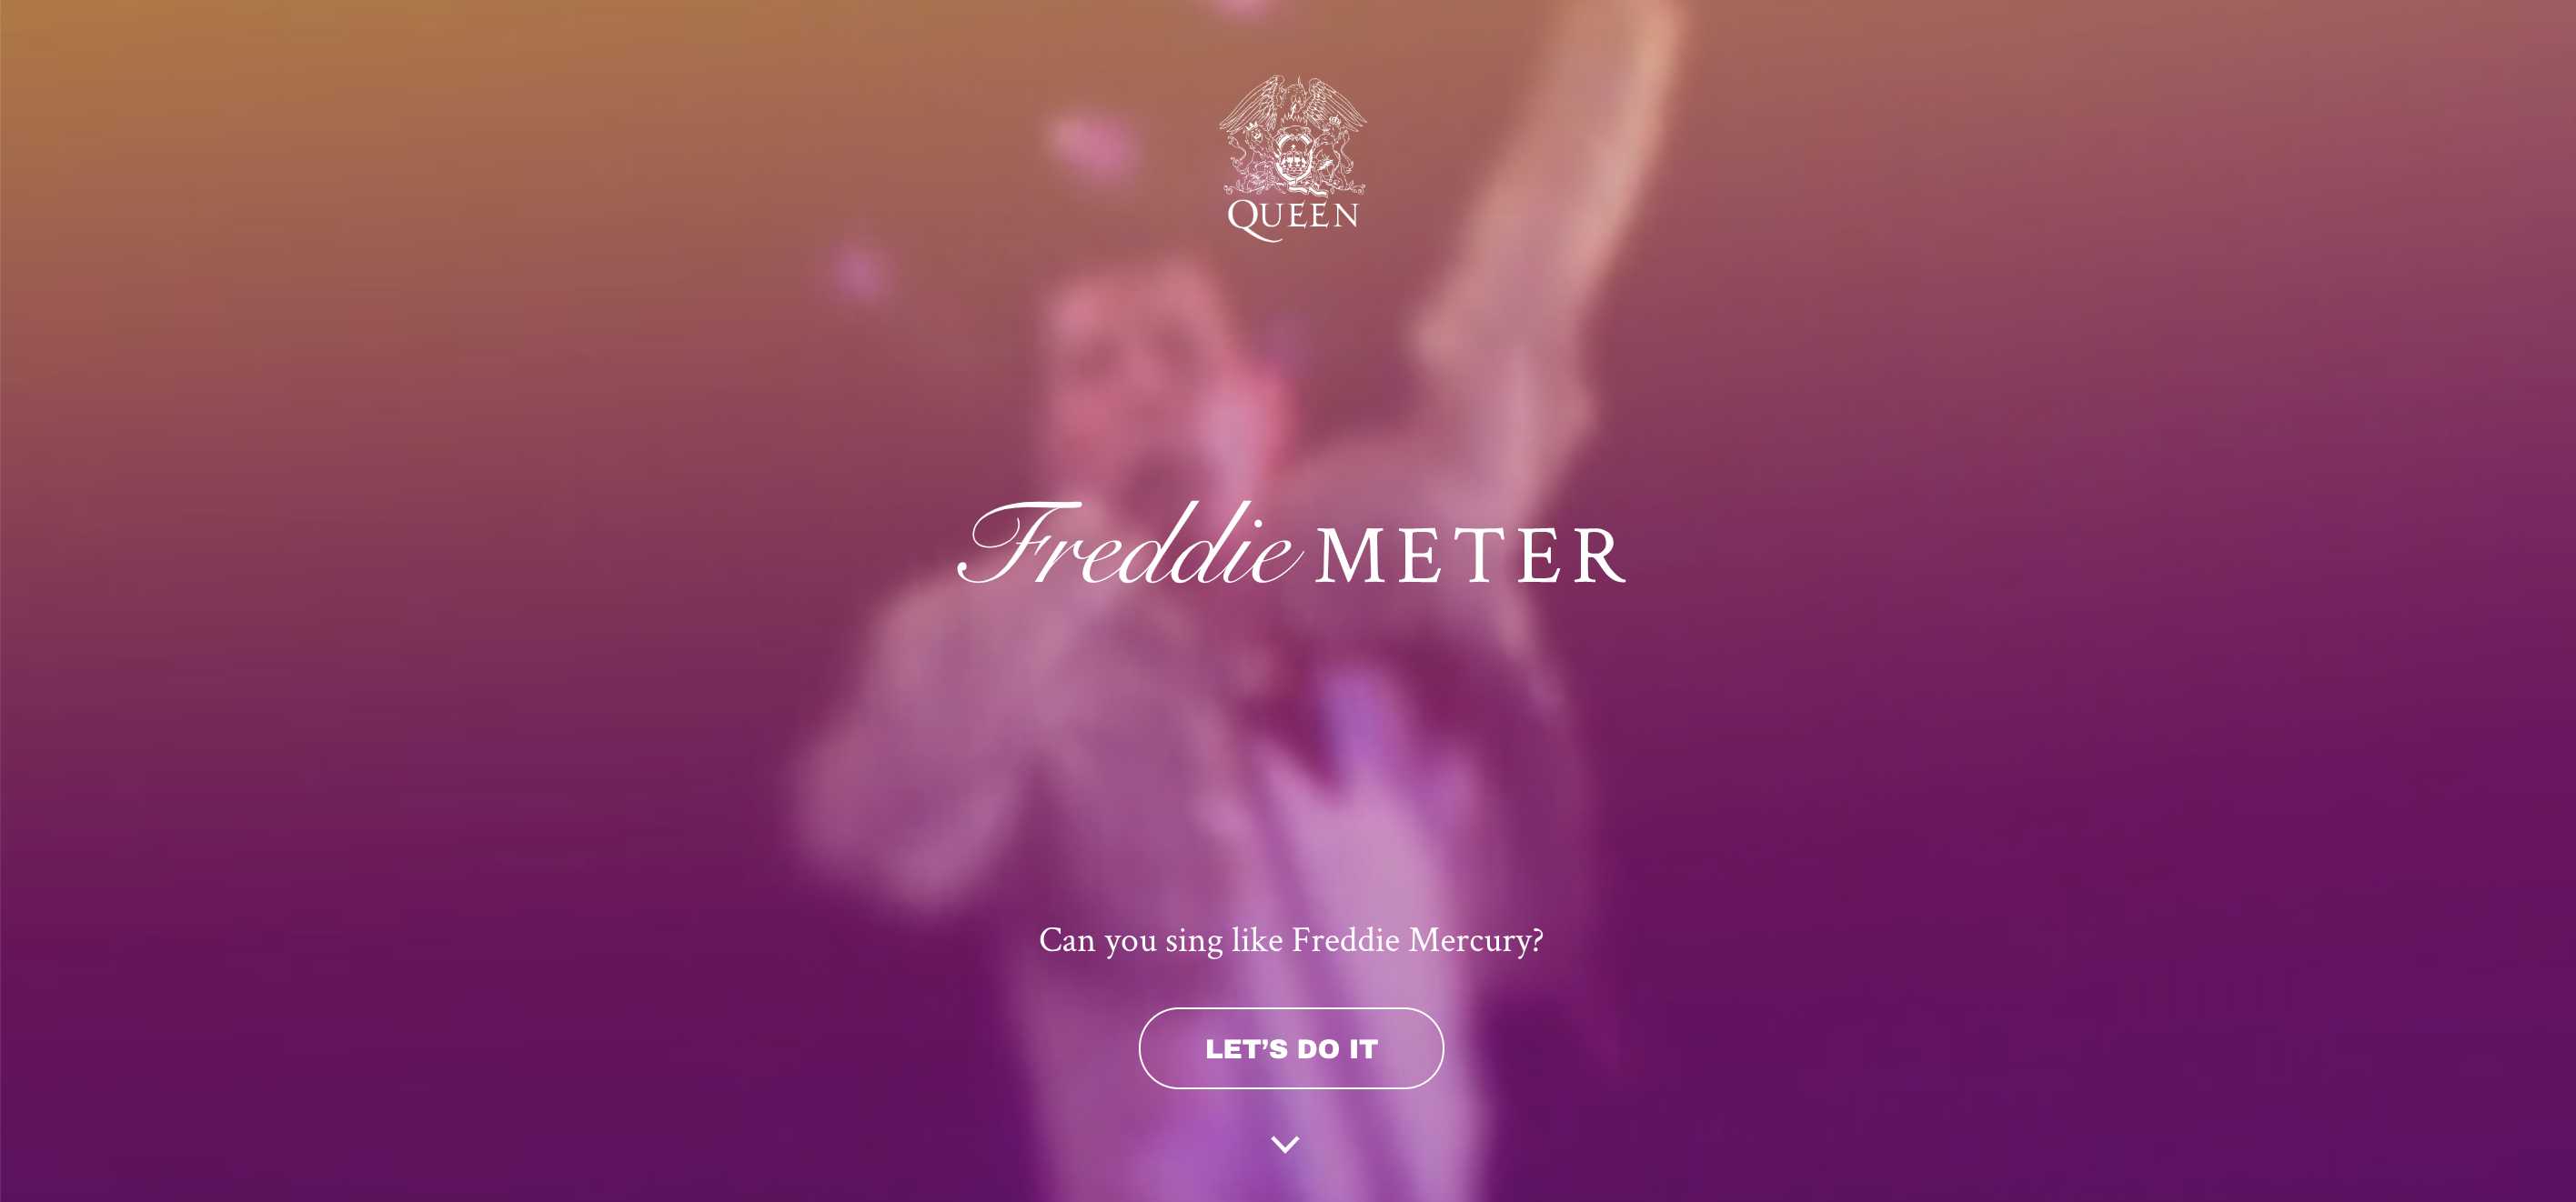 Einmal singen wie Freddie Mercury – mit dem FreddieMeter klappt das vielleicht schon bald